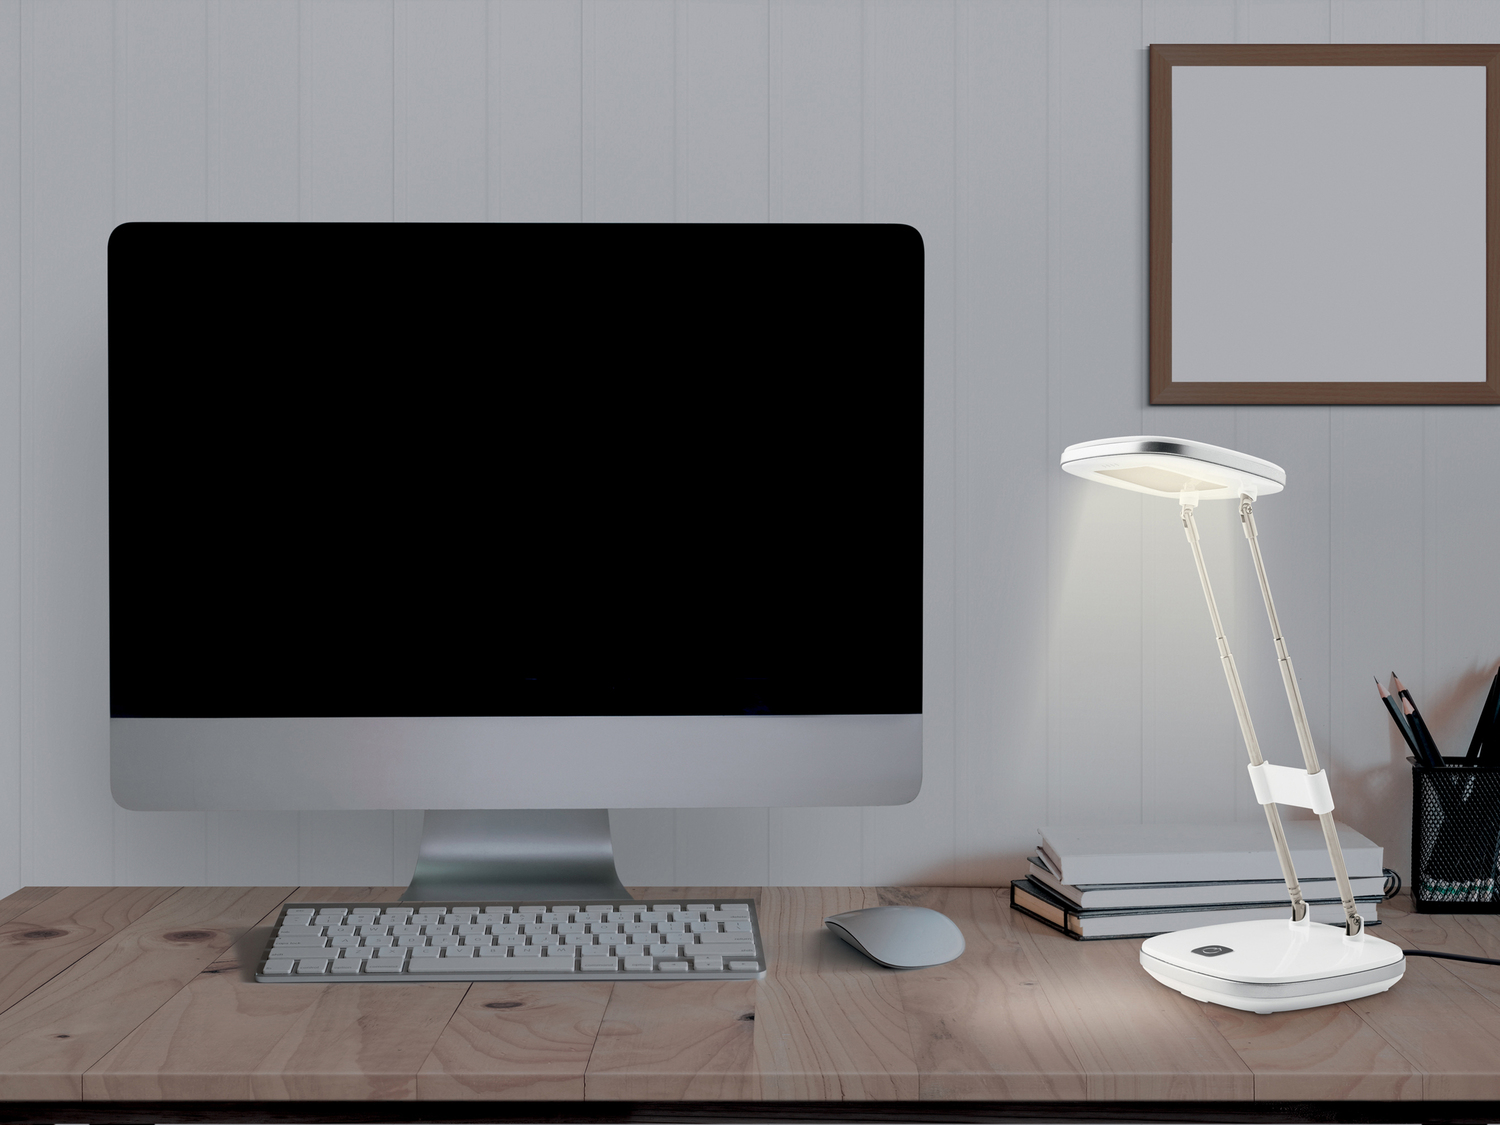 Lampada LED da tavolo Livarno Lux, prezzo 7.99 € 
- Estendibile da 22 a 34 cm
- ...